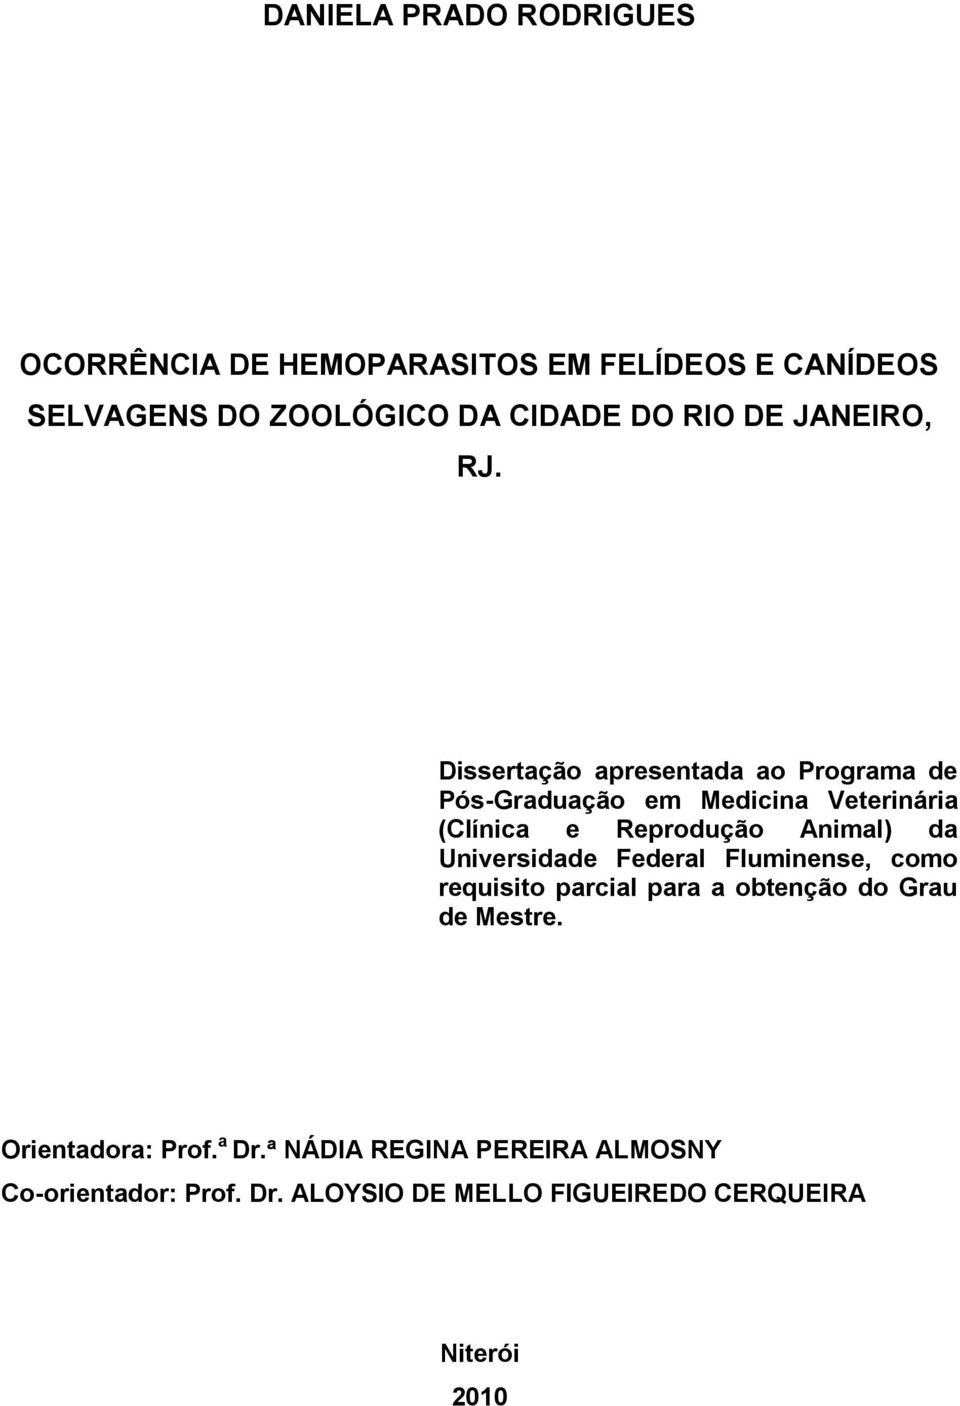 Dissertação apresentada ao Programa de Pós-Graduação em Medicina Veterinária (Clínica e Reprodução Animal) da